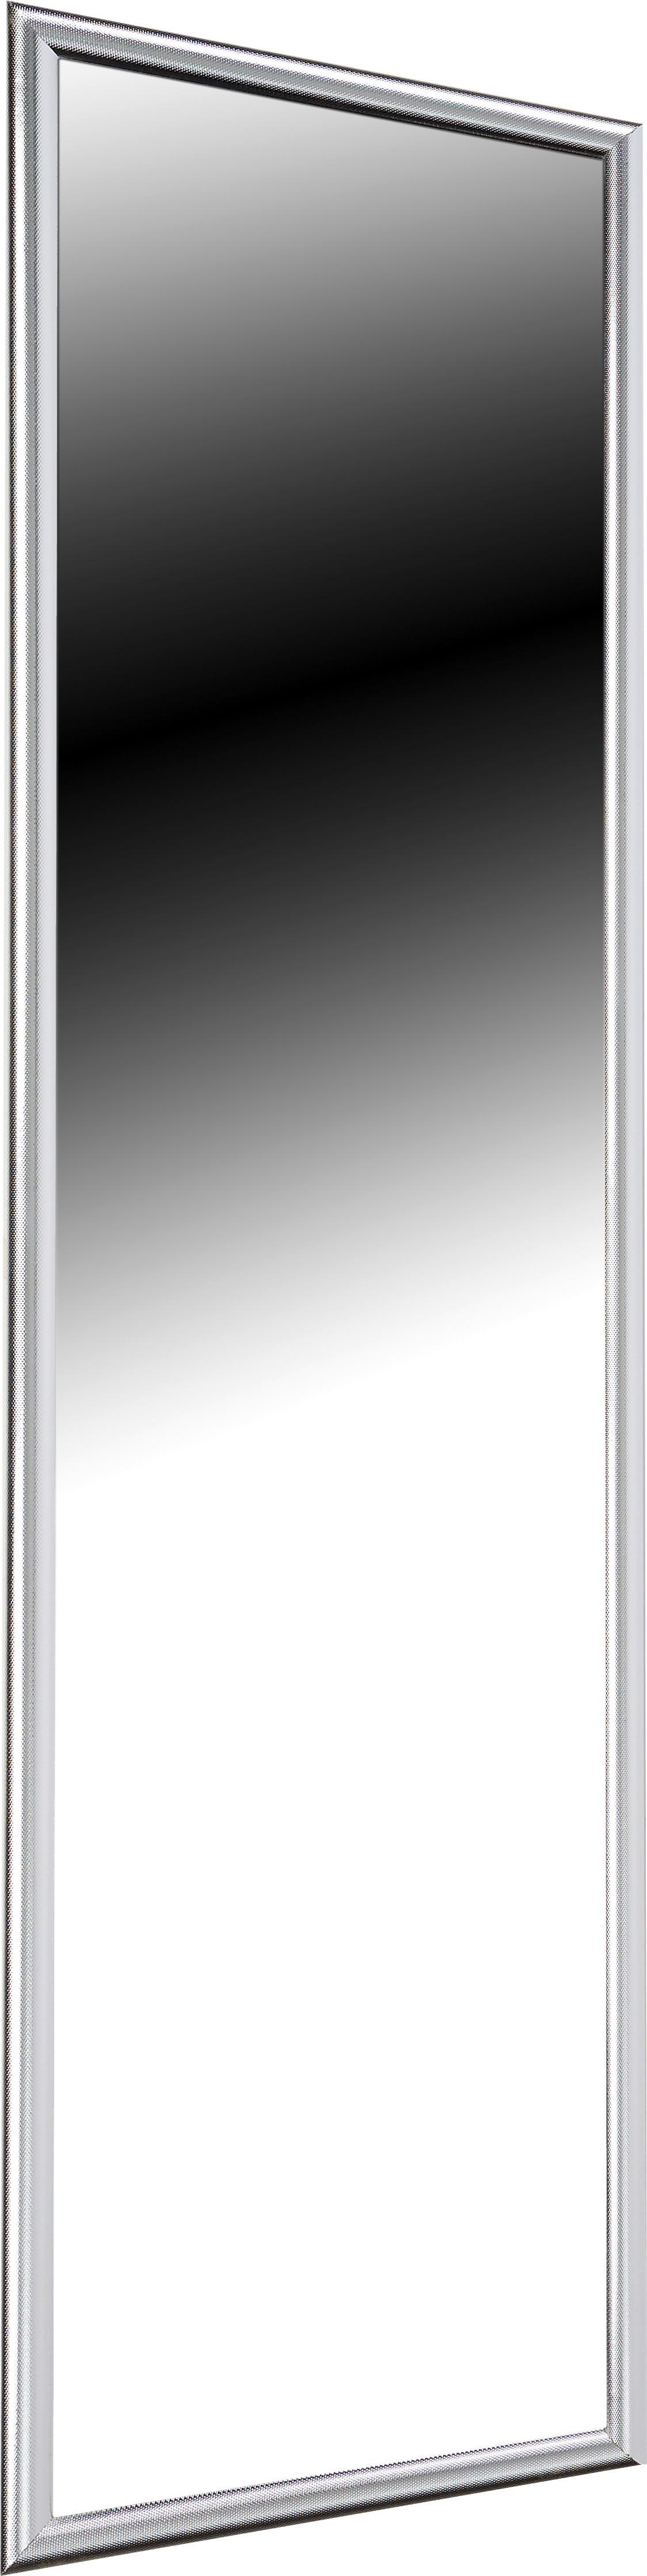 Nástěnné Zrcadlo Fumo 103-657 - barvy stříbra, Moderní, kompozitní dřevo/sklo (40/160cm) - Ondega